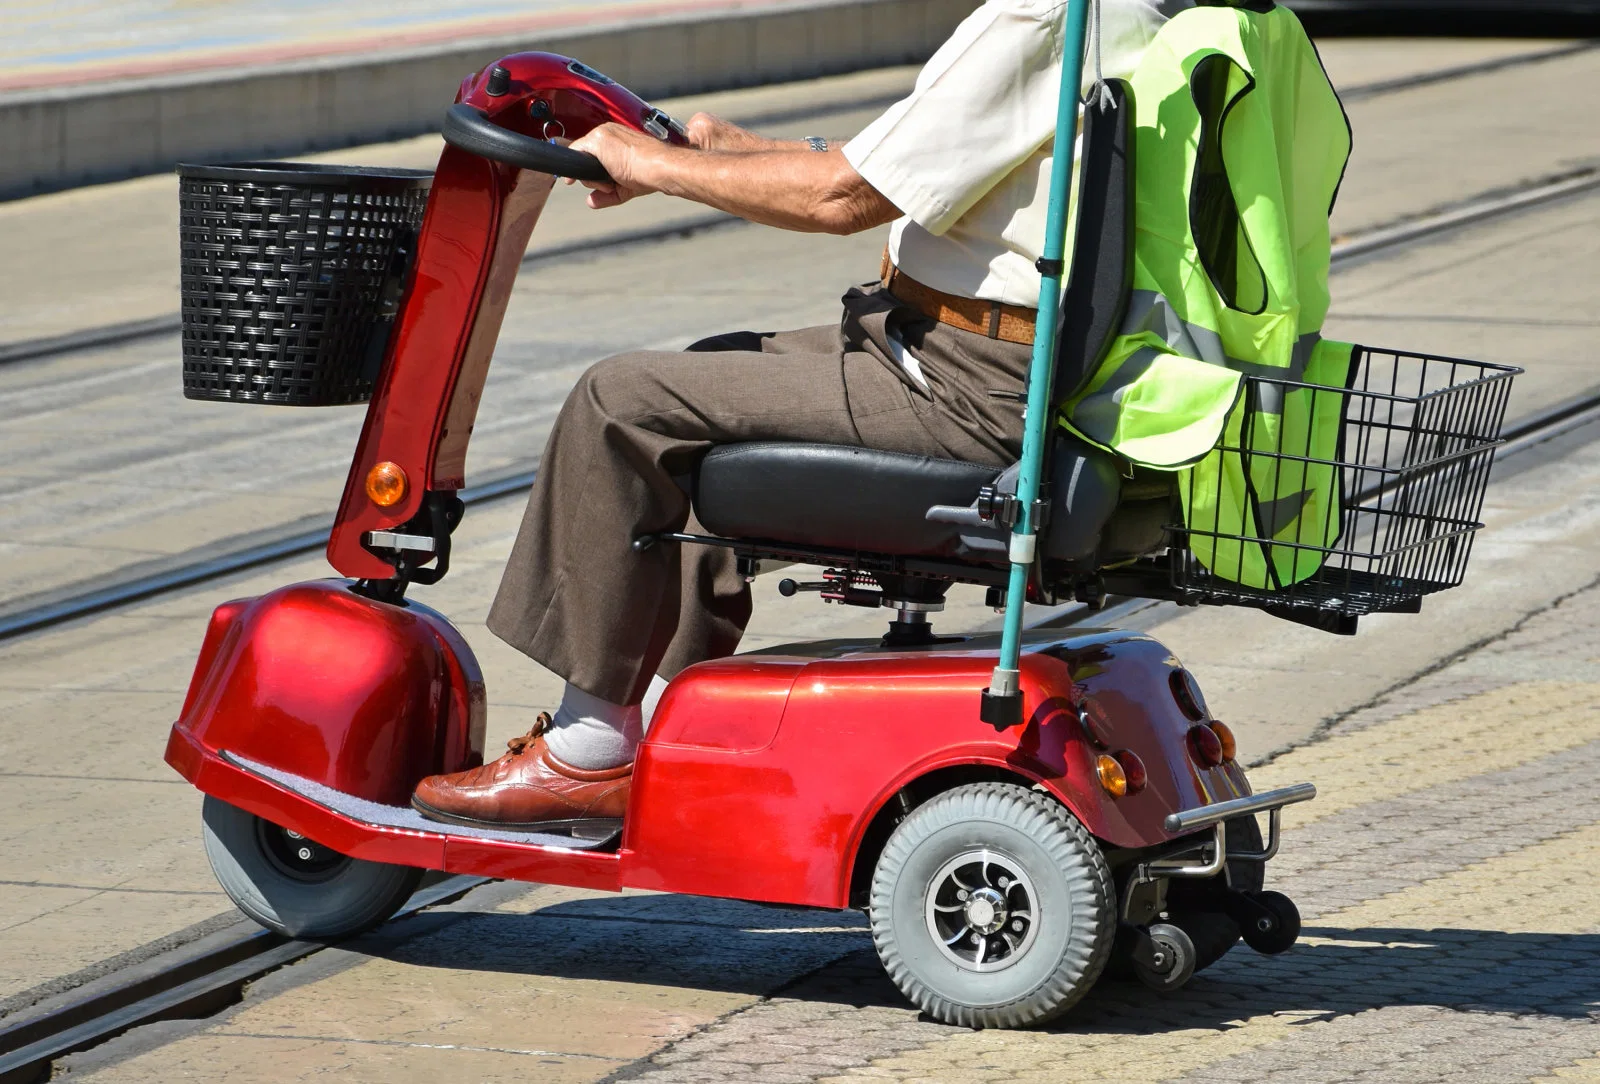 Складная коляска с электроприводом стул Silla De Ruedas Моторная кресло с электроприводом С EEC в Китае Scooter